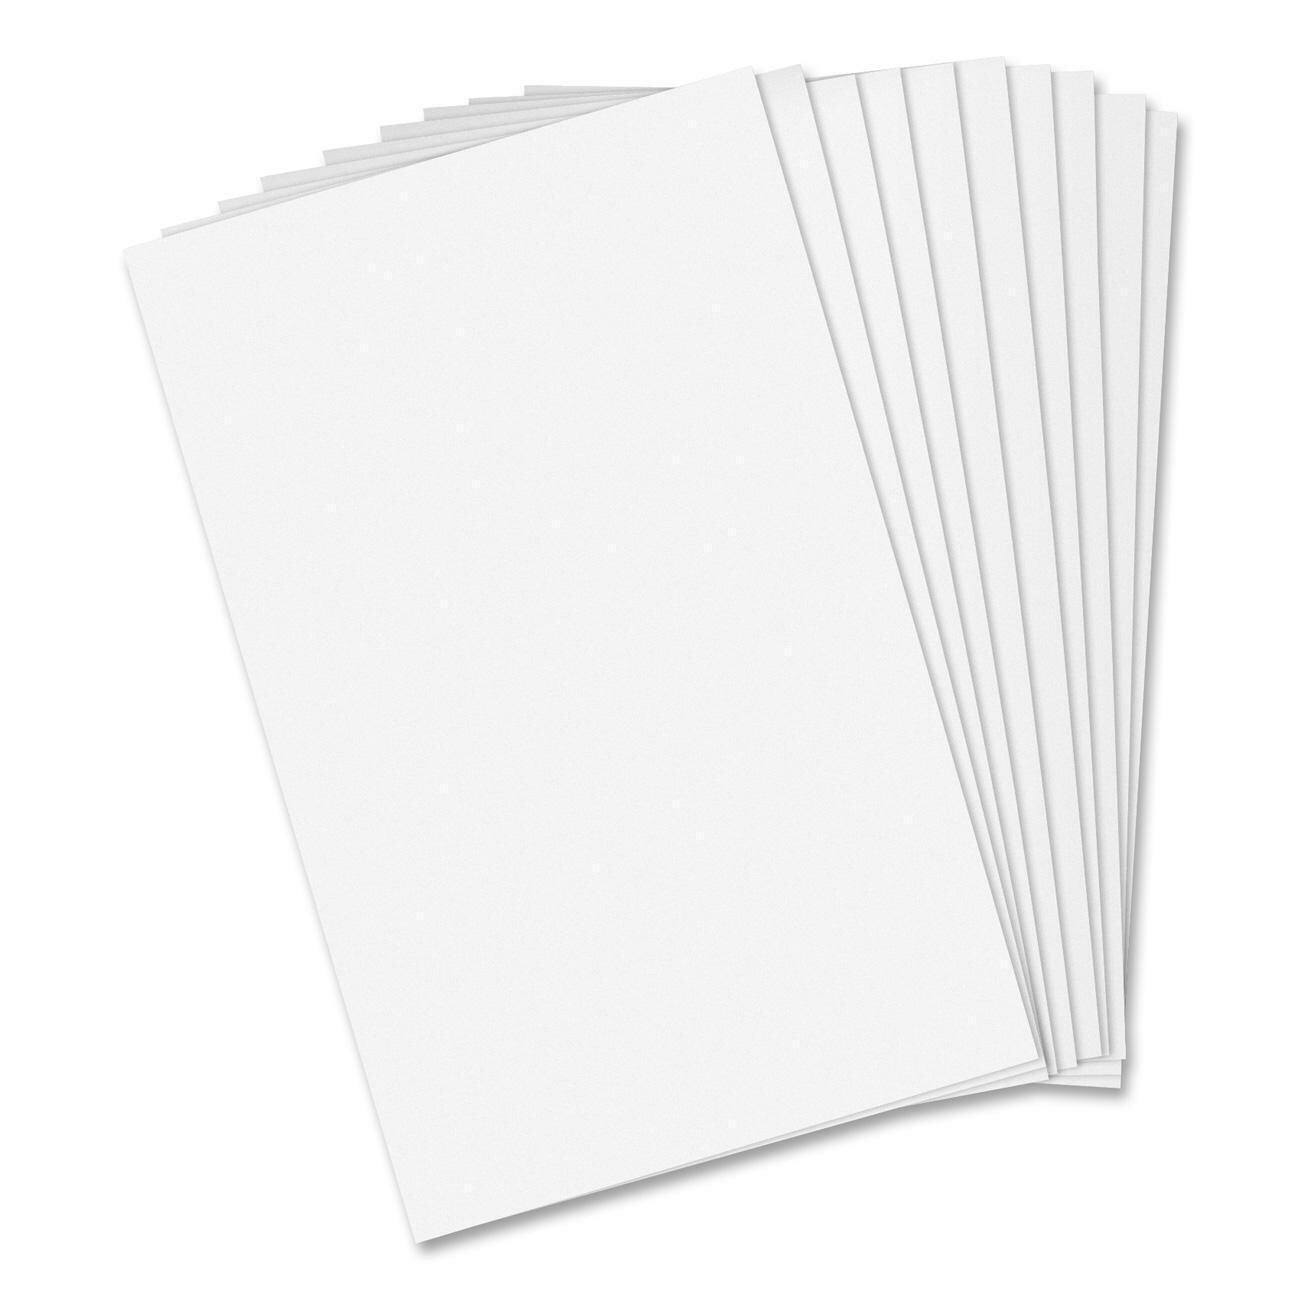 Paper, Scratch Pad 4" x 6", 10 Pack